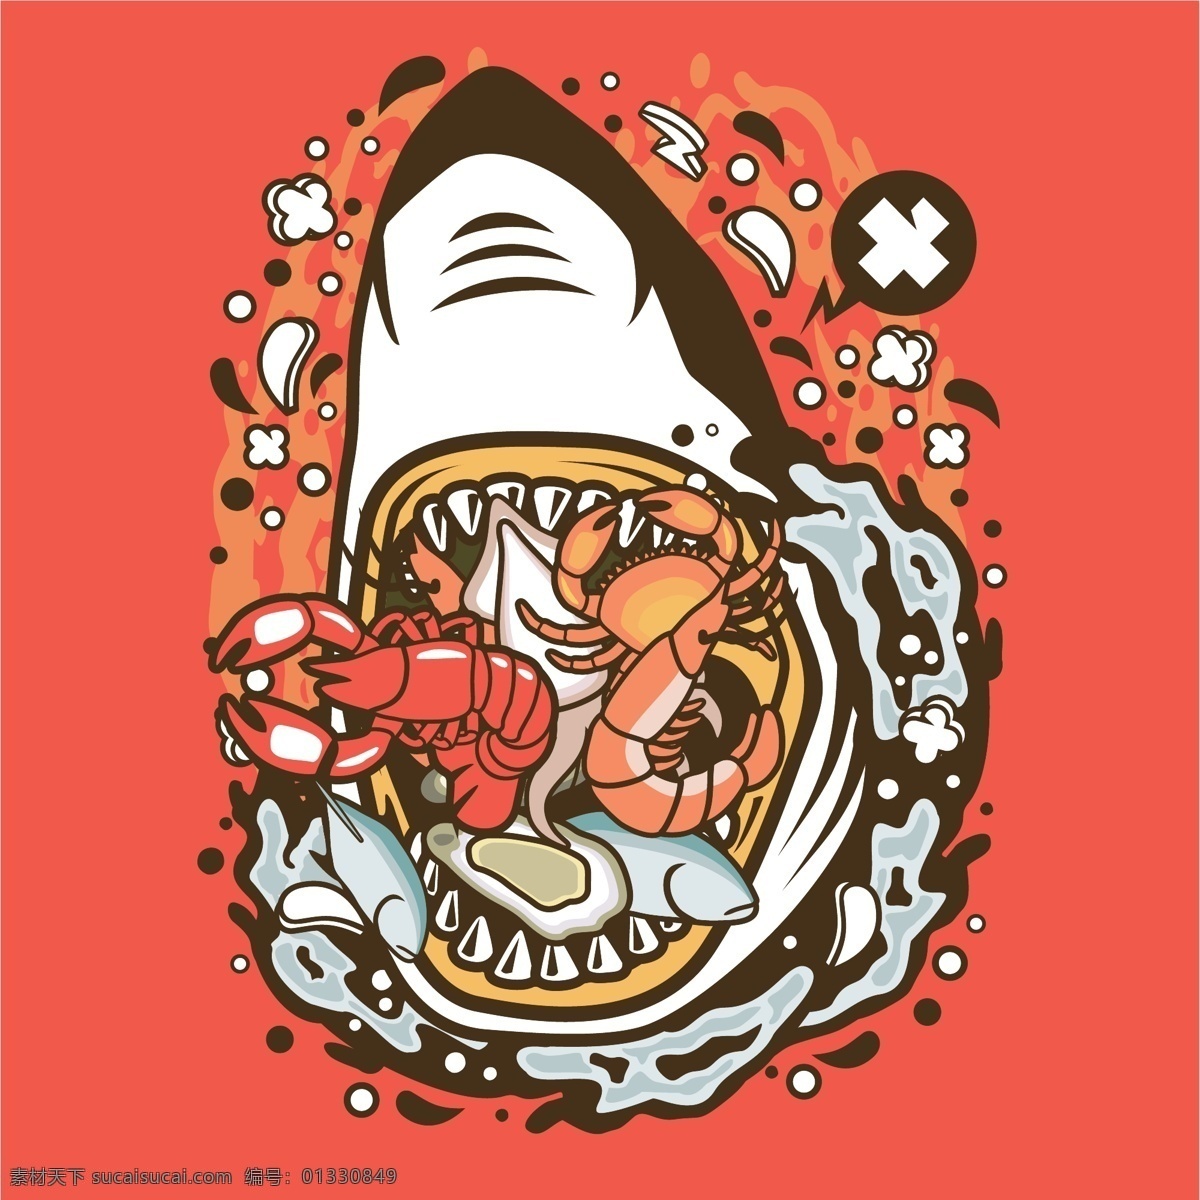 卡通鲨鱼海鲜 卡通 鲨鱼 海鲜 卡通鲨鱼 龙虾 虾 章鱼 动物 生物世界 海洋生物